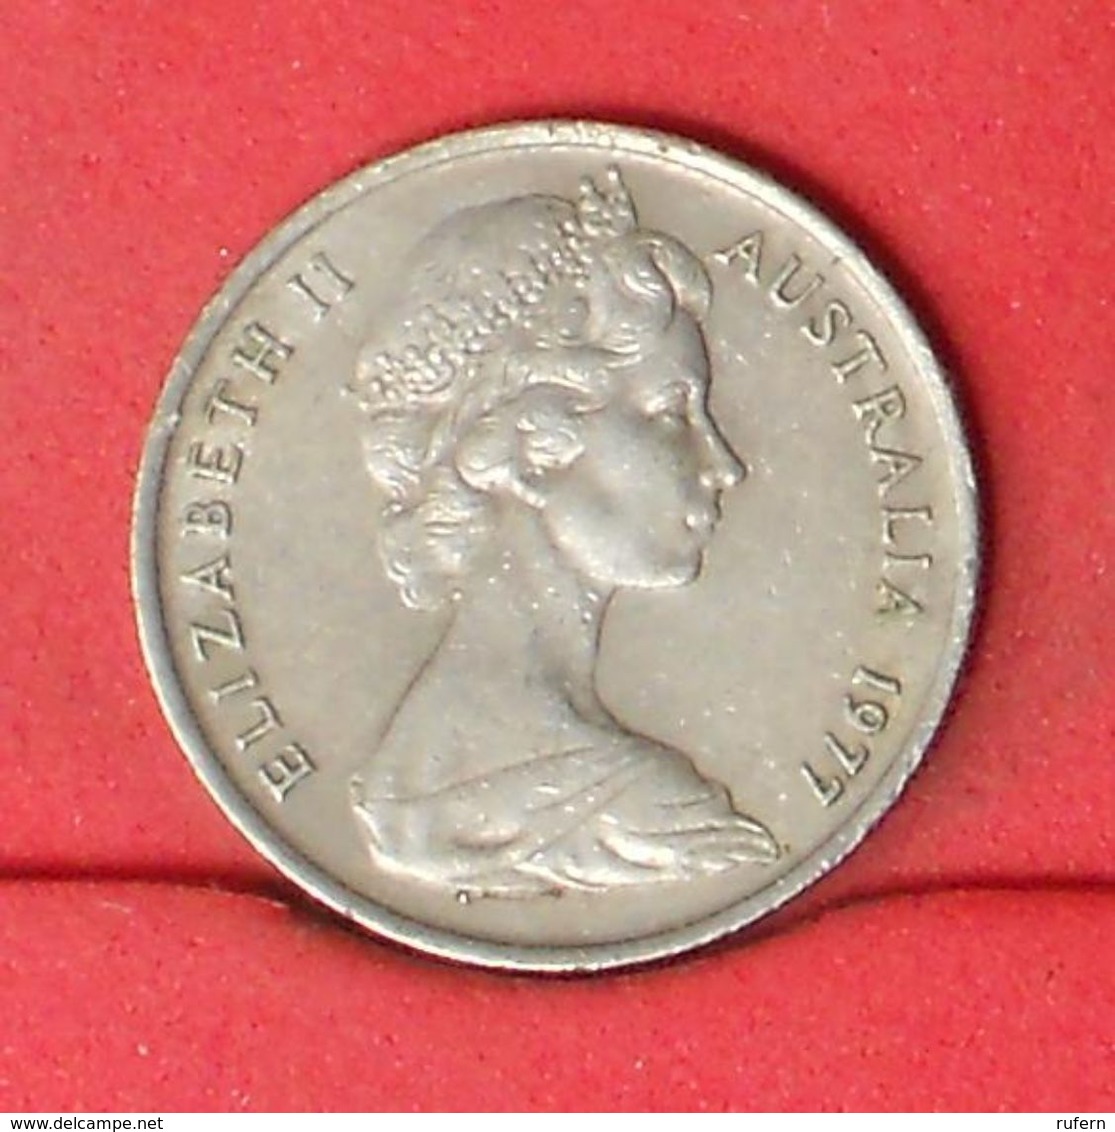 AUSTRALIA 5 CENTS 1977 -    KM# 64 - (Nº20174) - 5 Cents